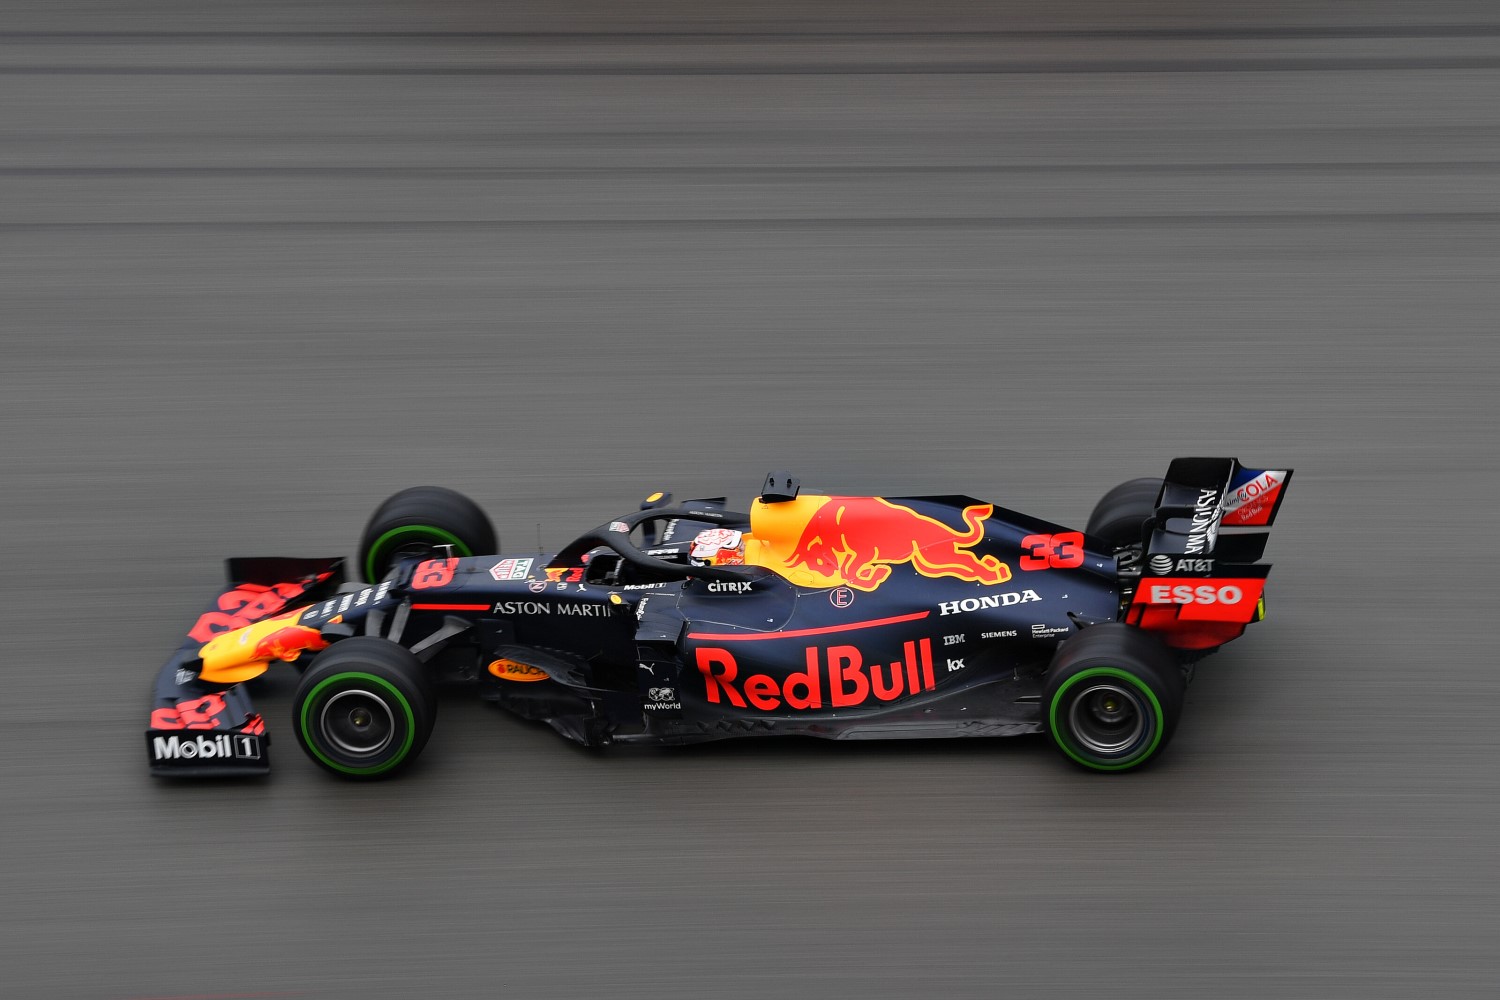 Max Verstappen in the Red Bull Honda